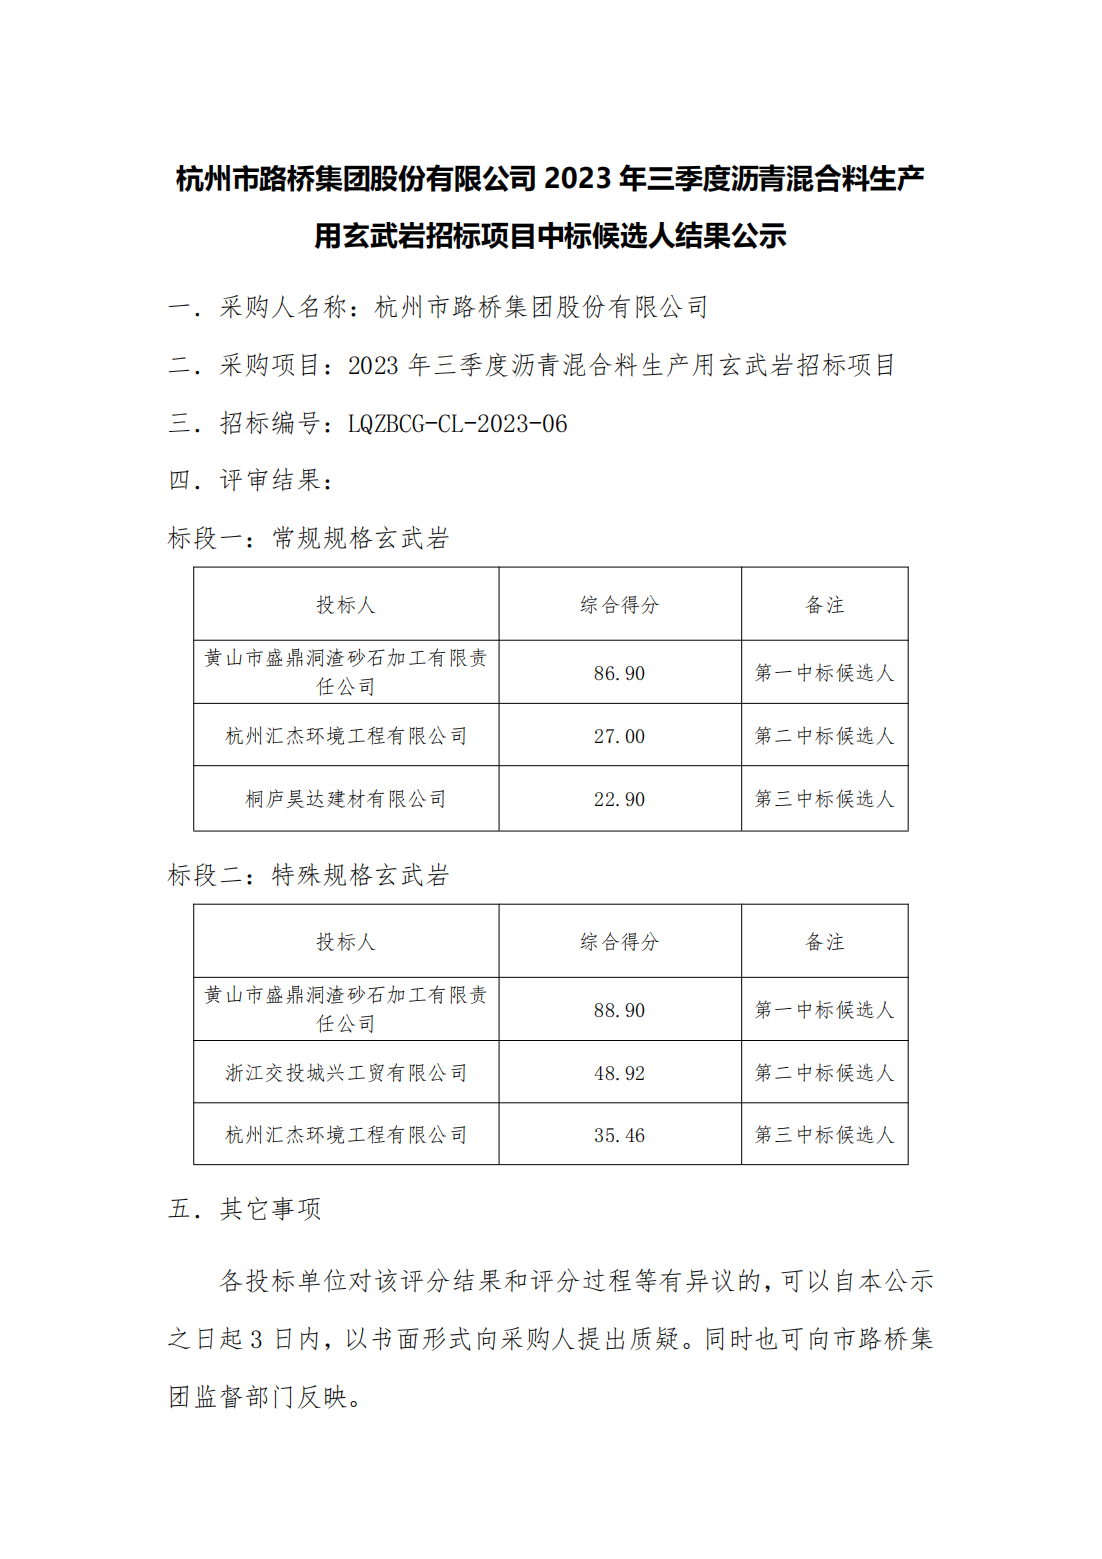 中标候选人结果公示-杭州市路桥集团股份有限公司2023年三季度沥青混合料生产用玄武岩招标项目(1)_00.png